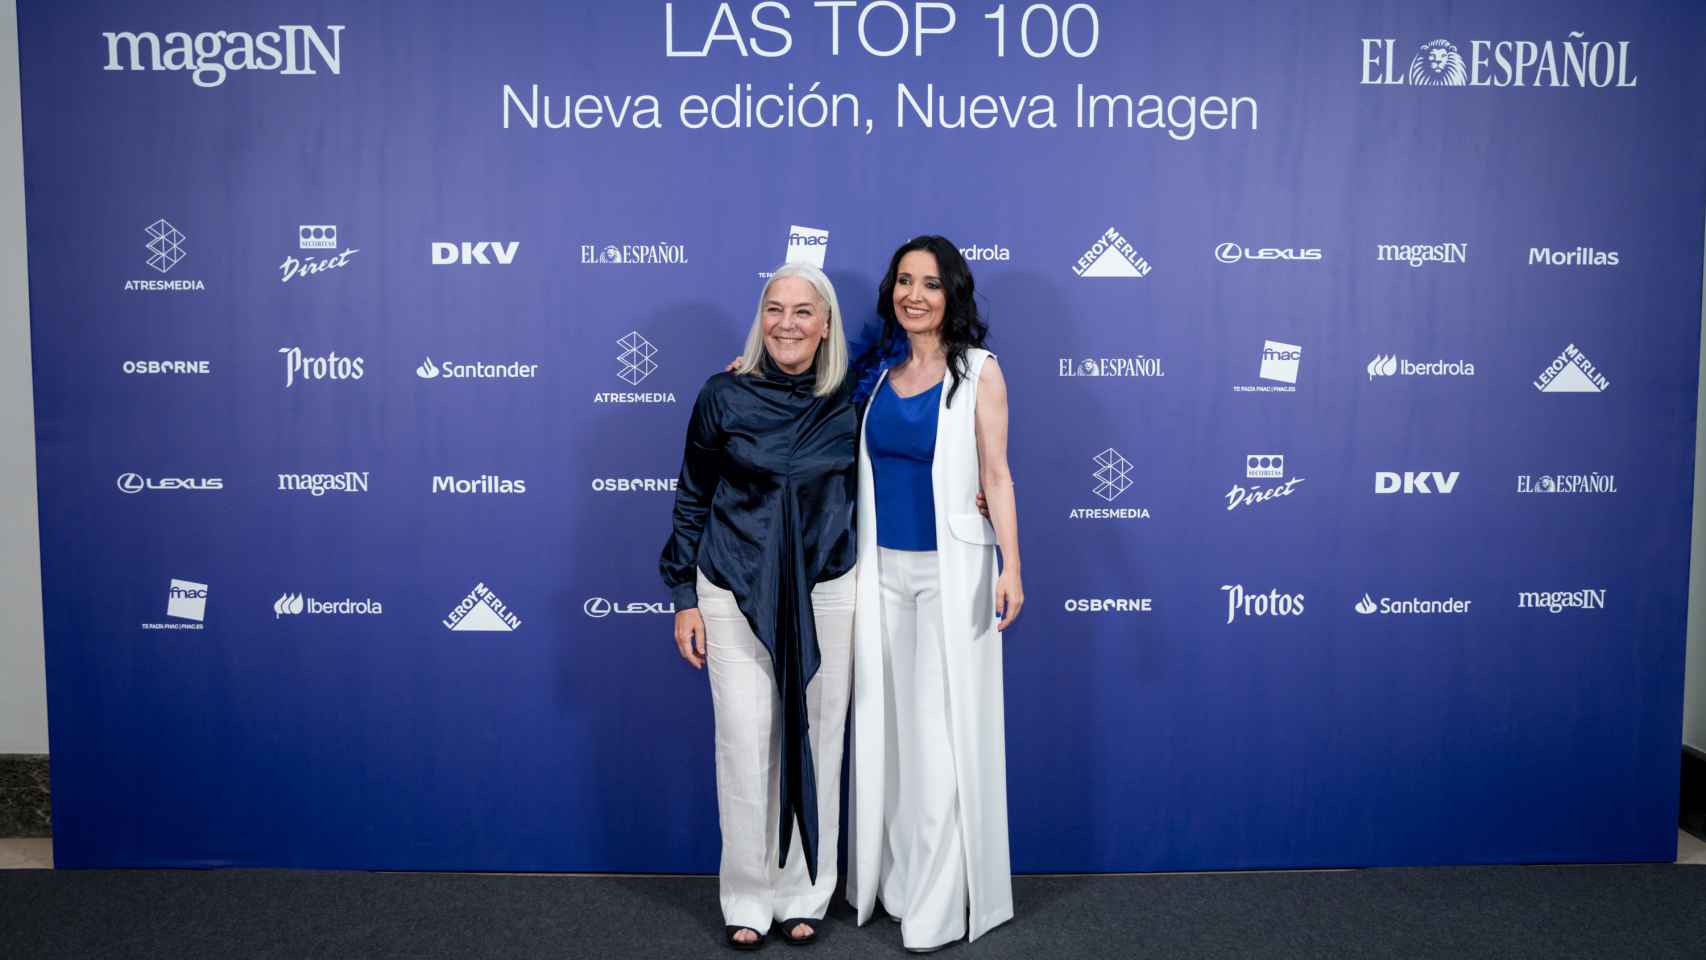 Las Top 100 presentan nueva imagen, en el Hotel Intercontinental de Madrid